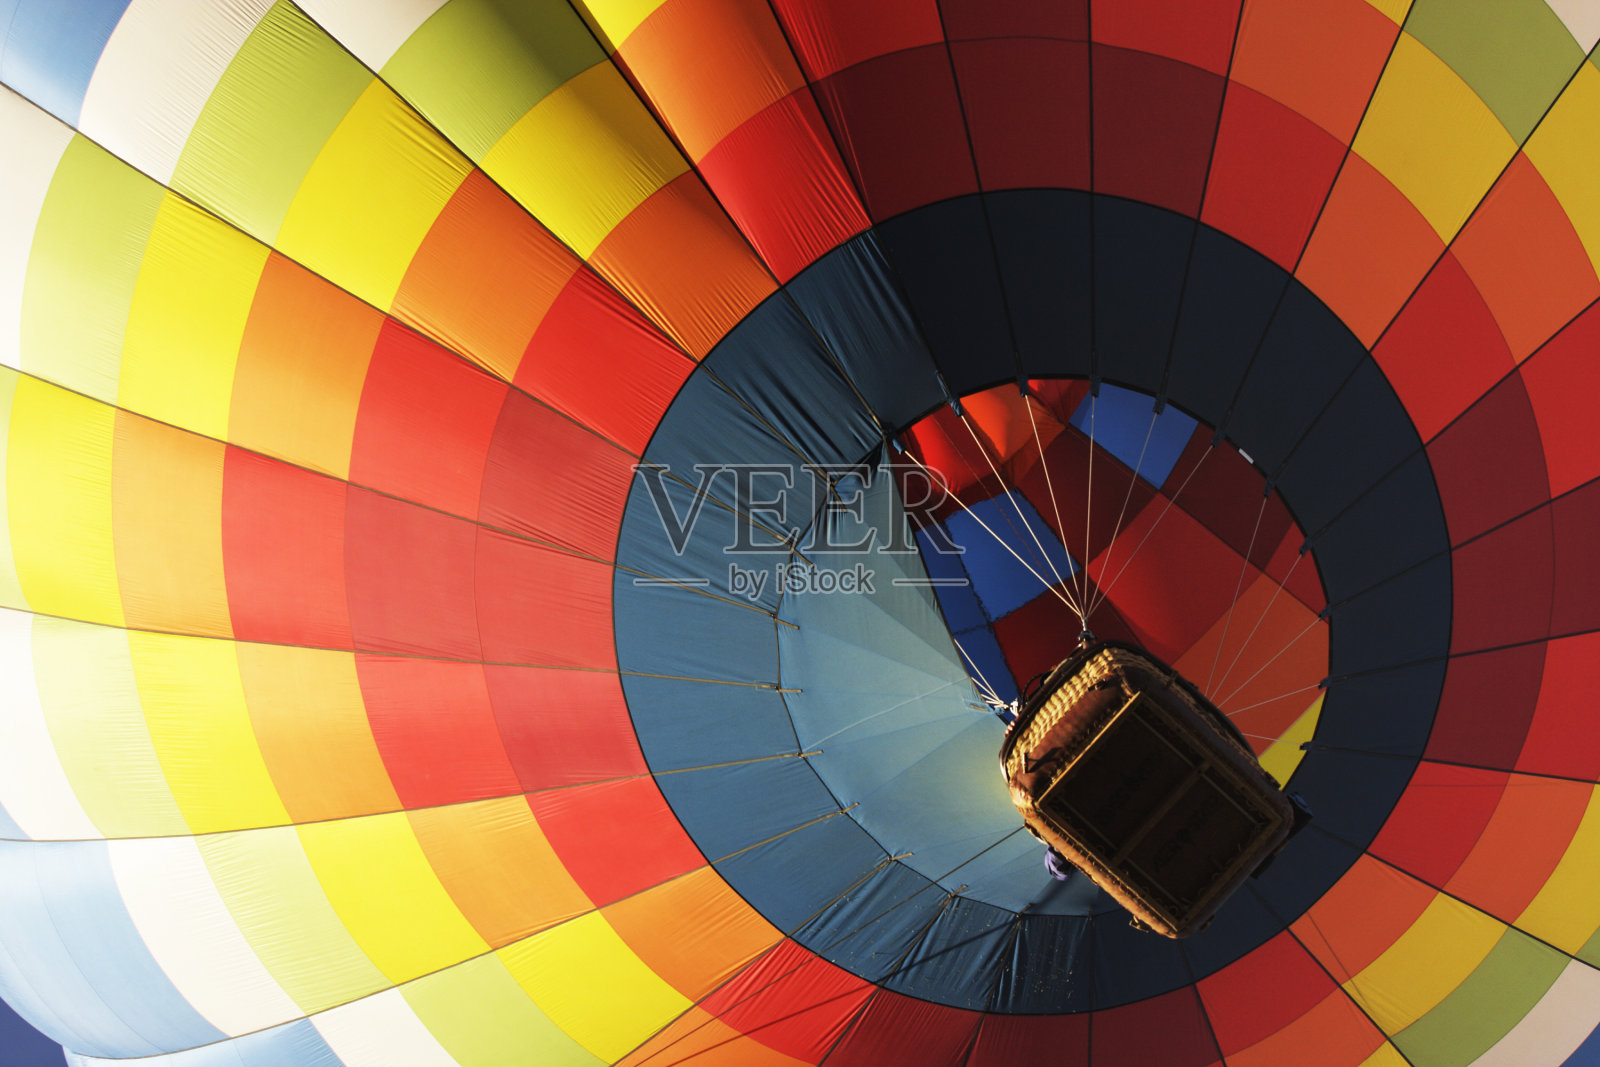 热气球节推出活动照片摄影图片